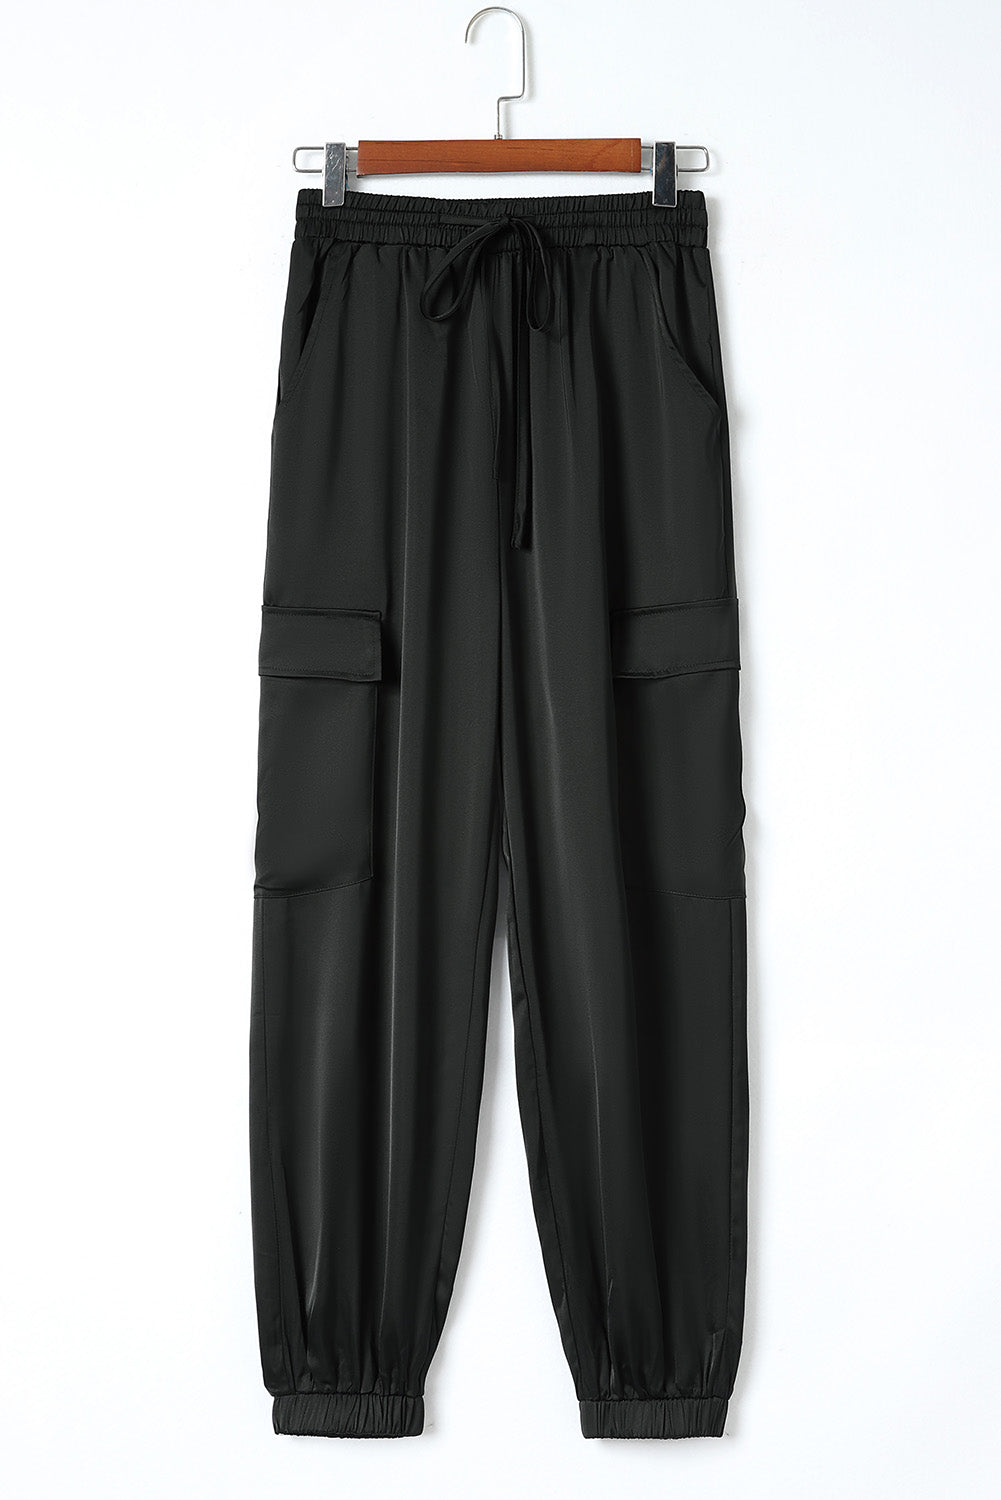 Črne satenaste hlače z žepom in elastiko v pasu